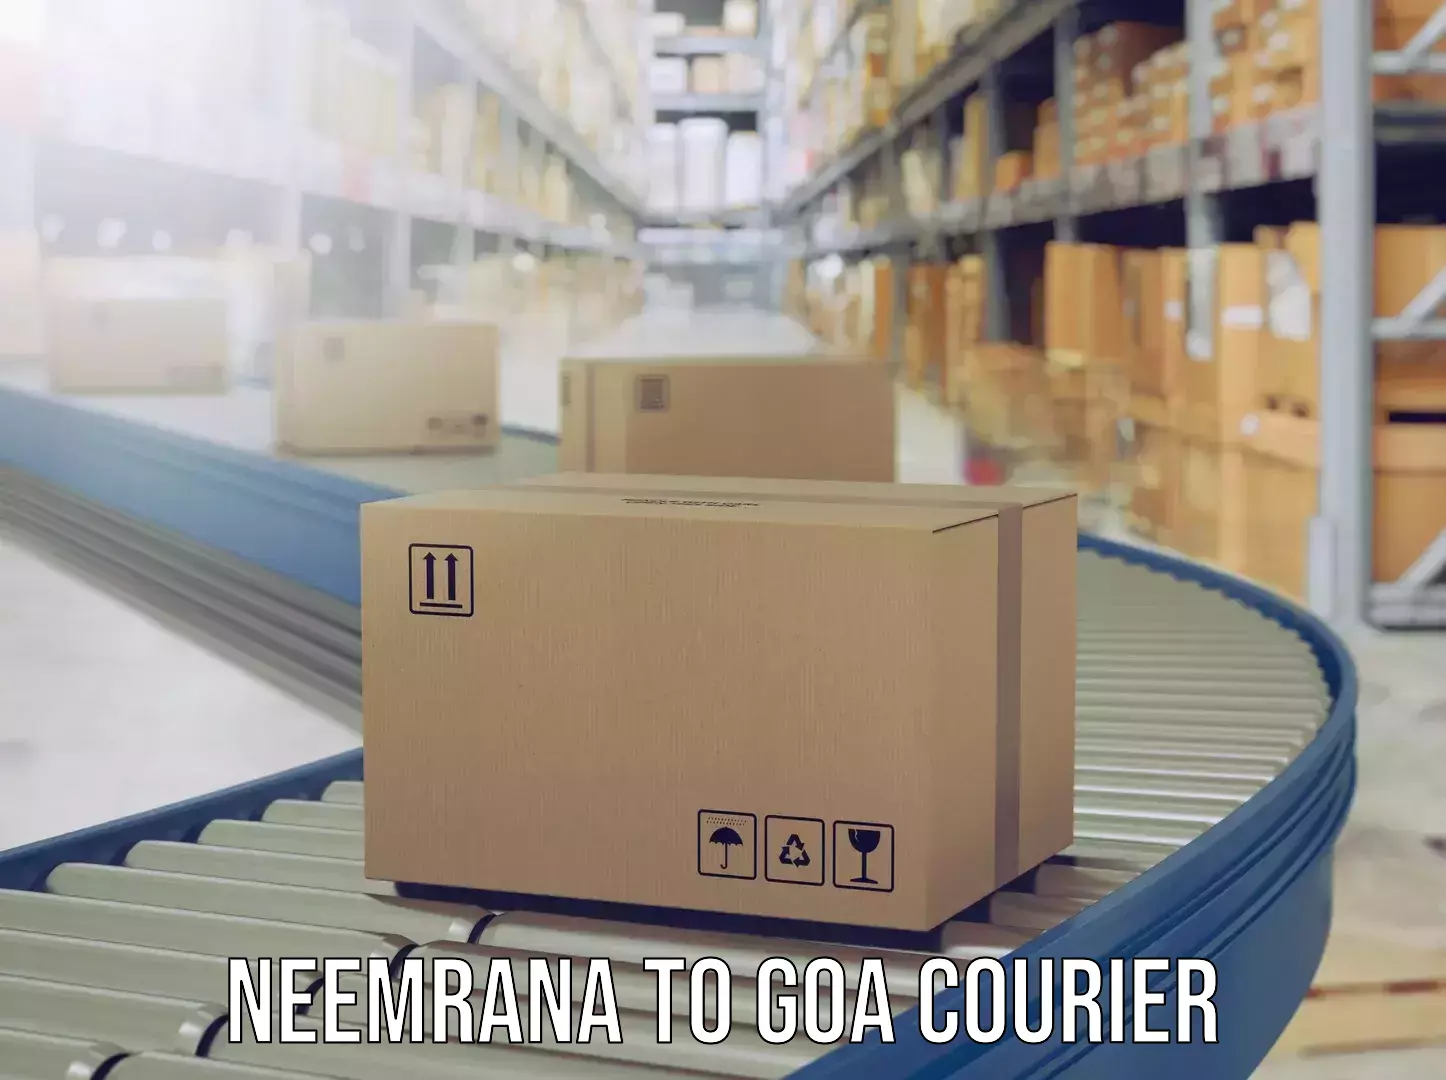 Luggage delivery news Neemrana to IIT Goa